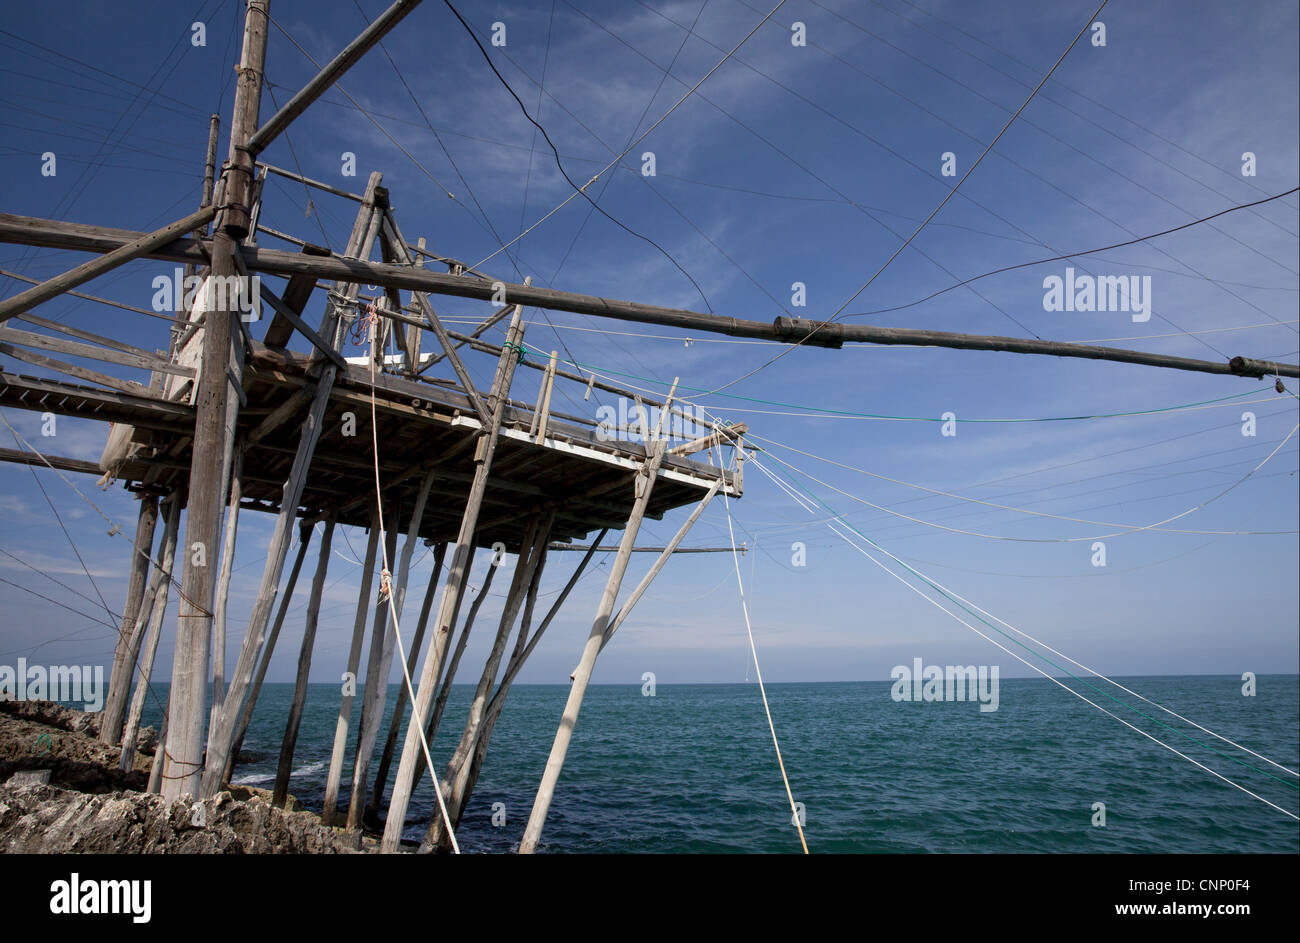 Trabucco de pesca, plataforma de diseño antiguo, posiblemente Phoenicean, Vieste, cerca de la península de Gargano, Puglia, Italia, abril Foto de stock